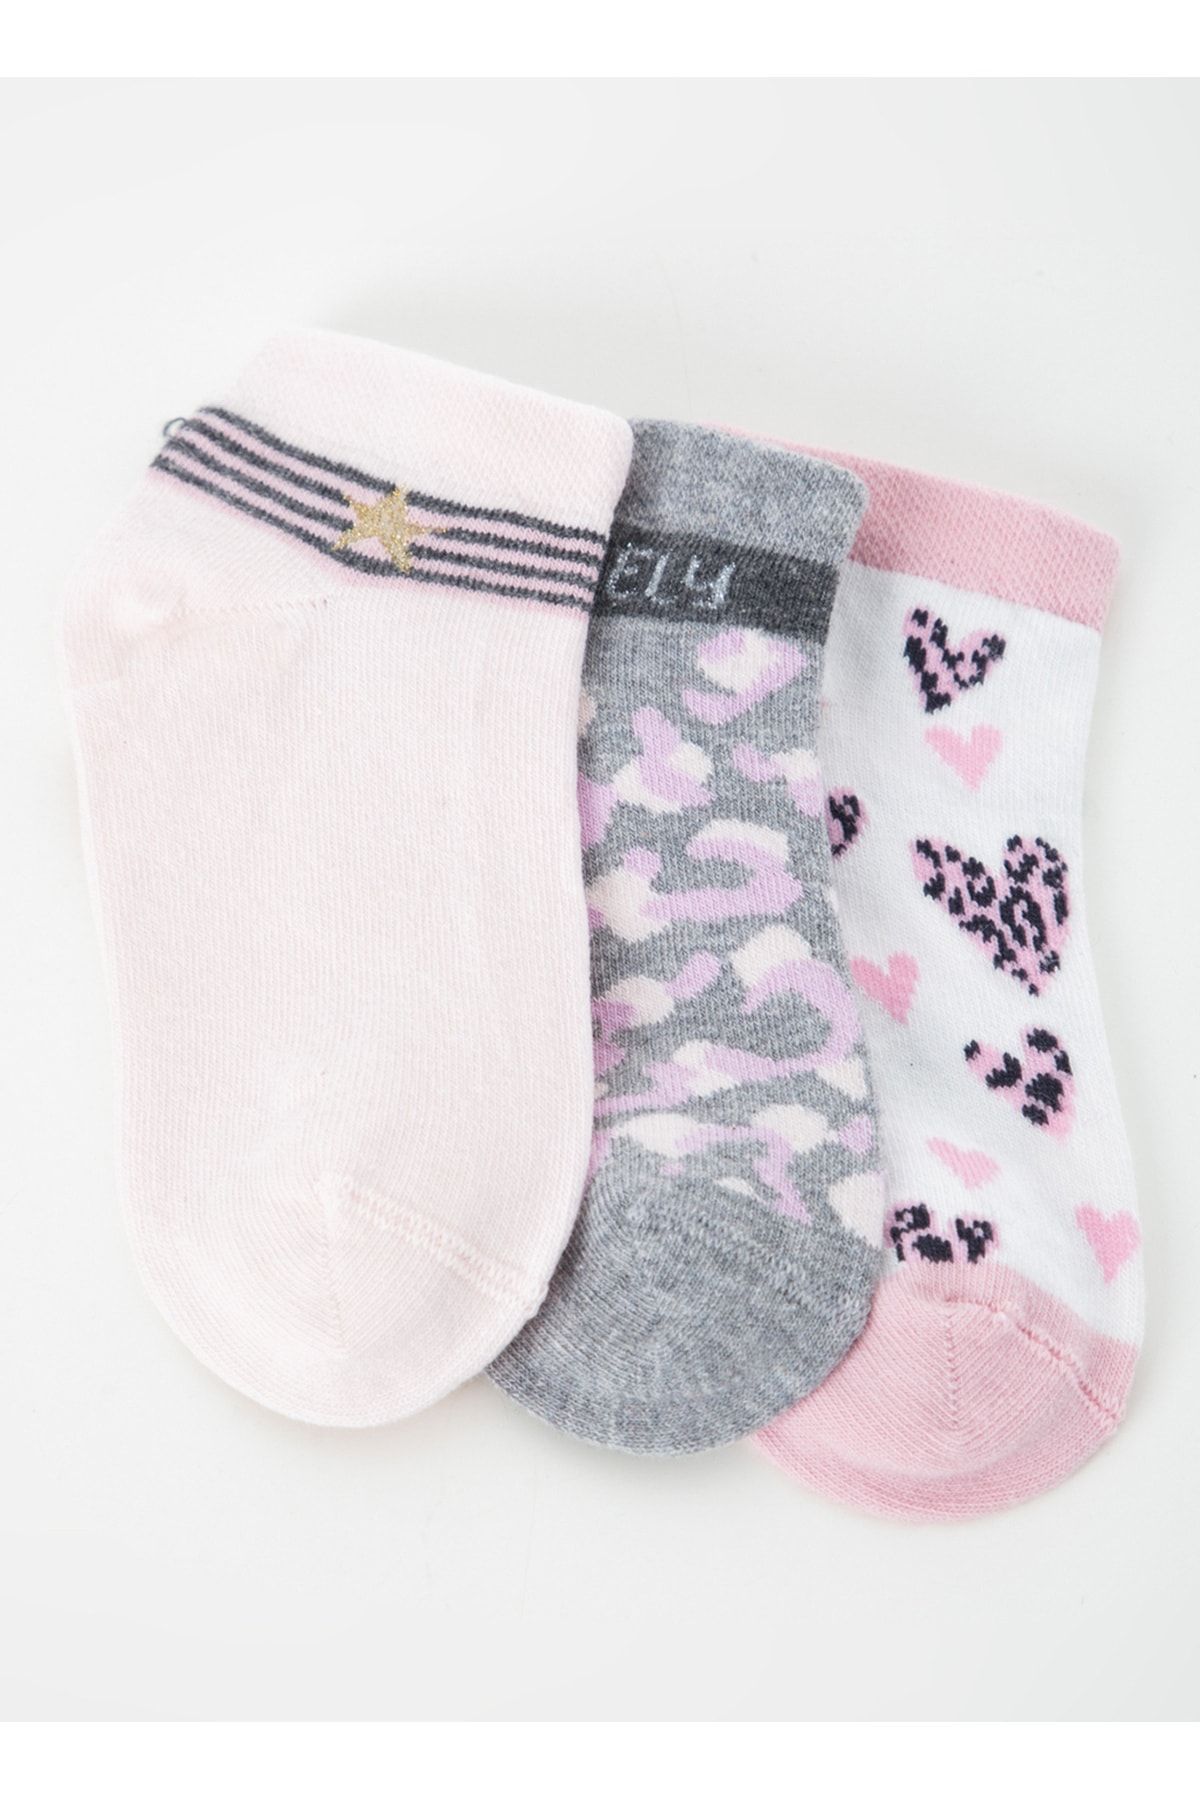 Cozzy Socks Beyaz - Pembe - Gri Kız Çocuk Soket Çorap